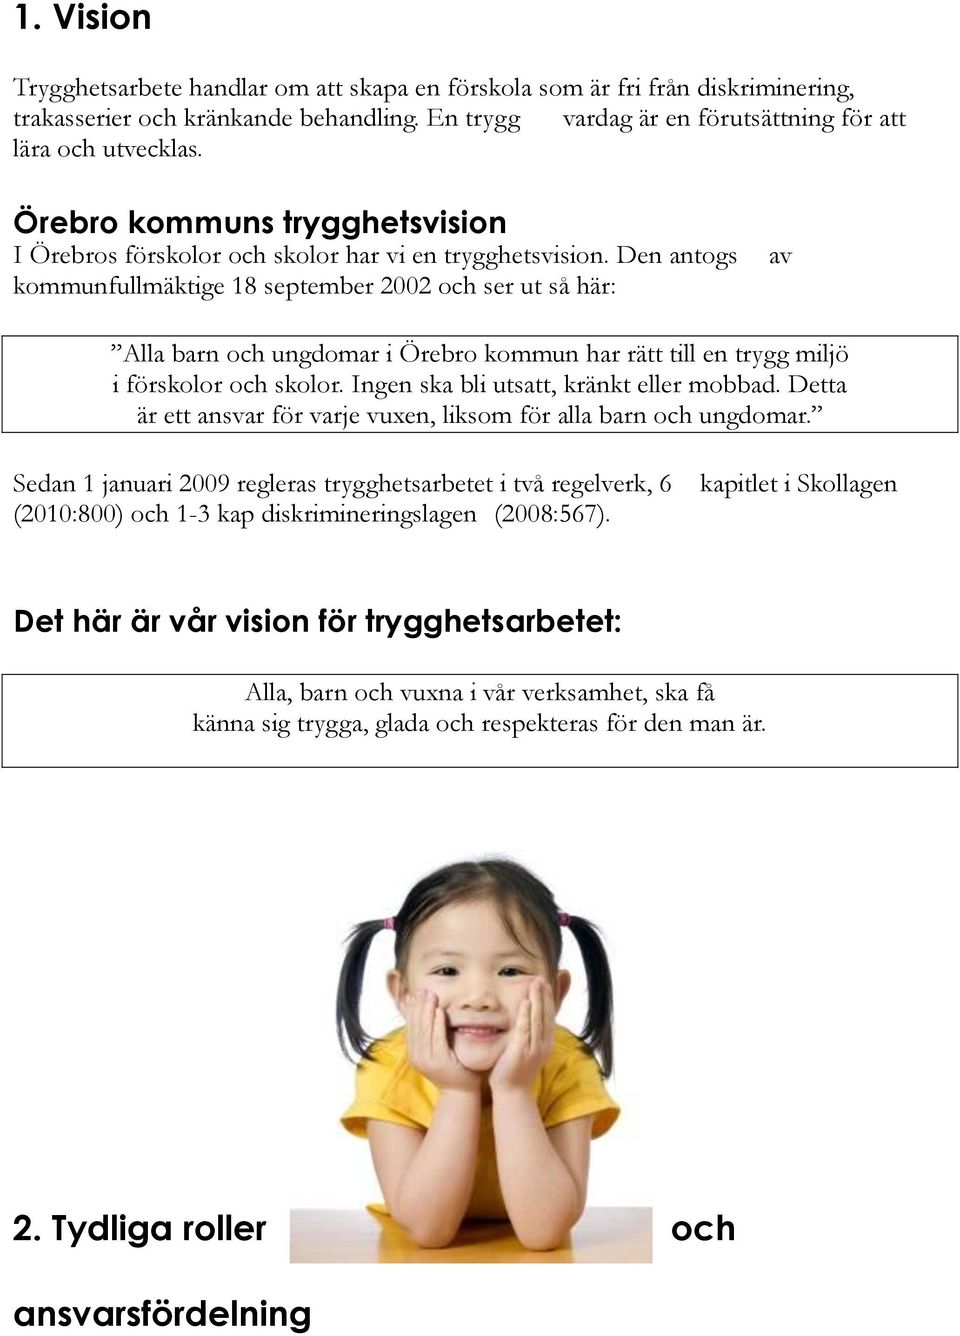 Den antogs kommunfullmäktige 18 september 2002 och ser ut så här: av Alla barn och ungdomar i Örebro kommun har rätt till en trygg miljö i förskolor och skolor.